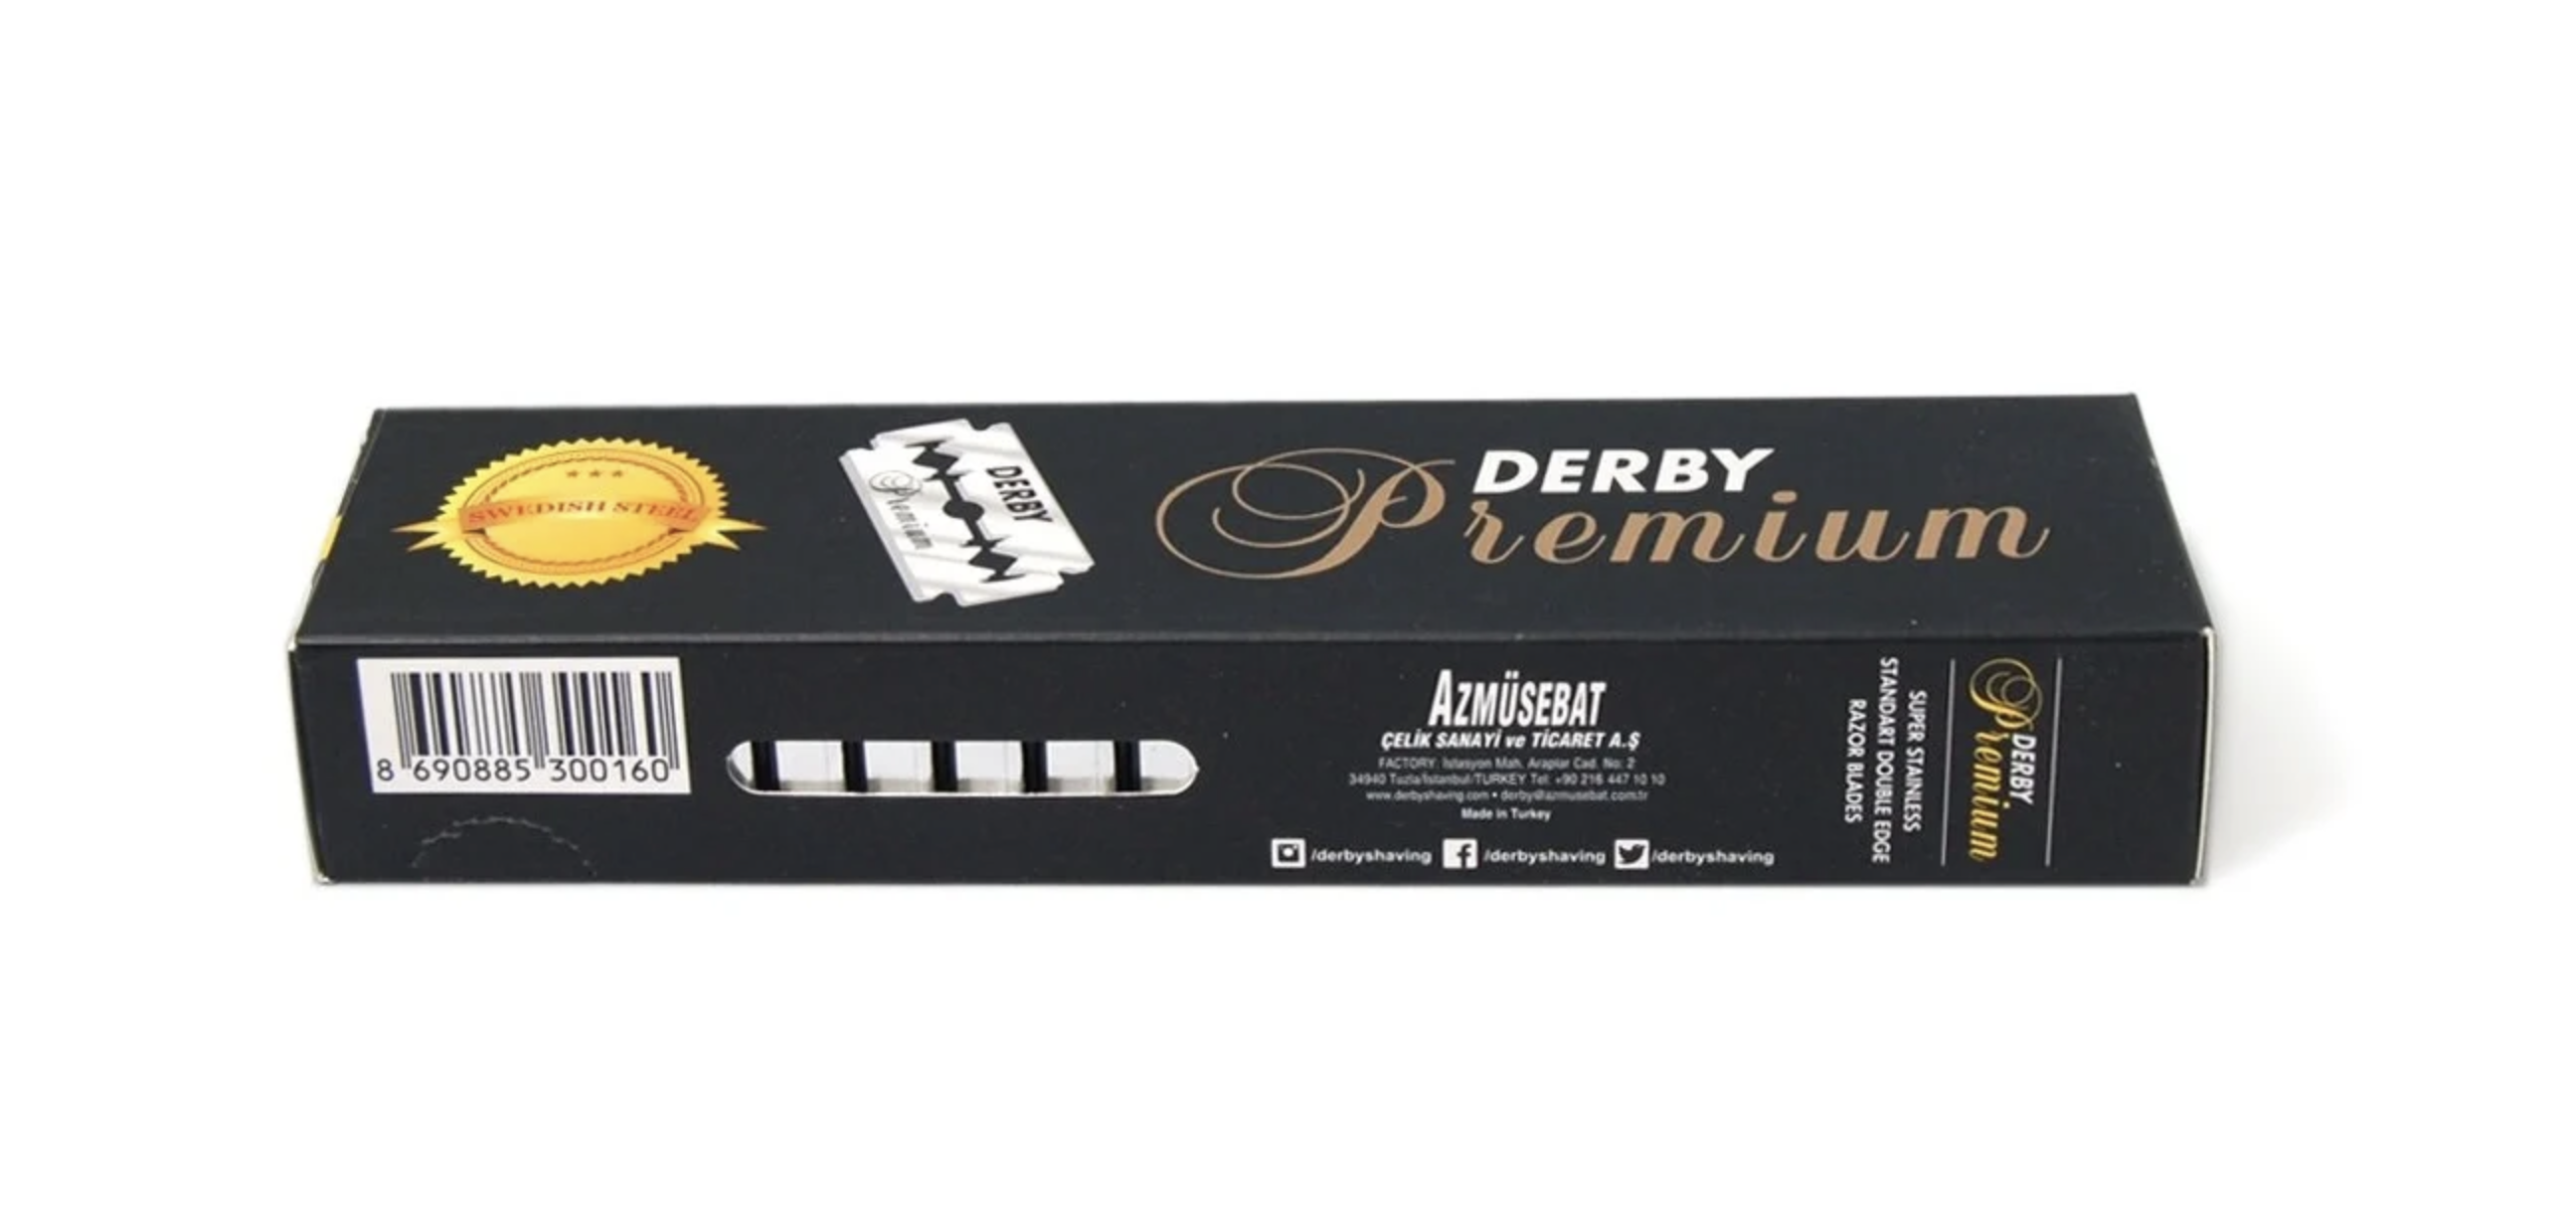    / Derby Premium -     100  ()